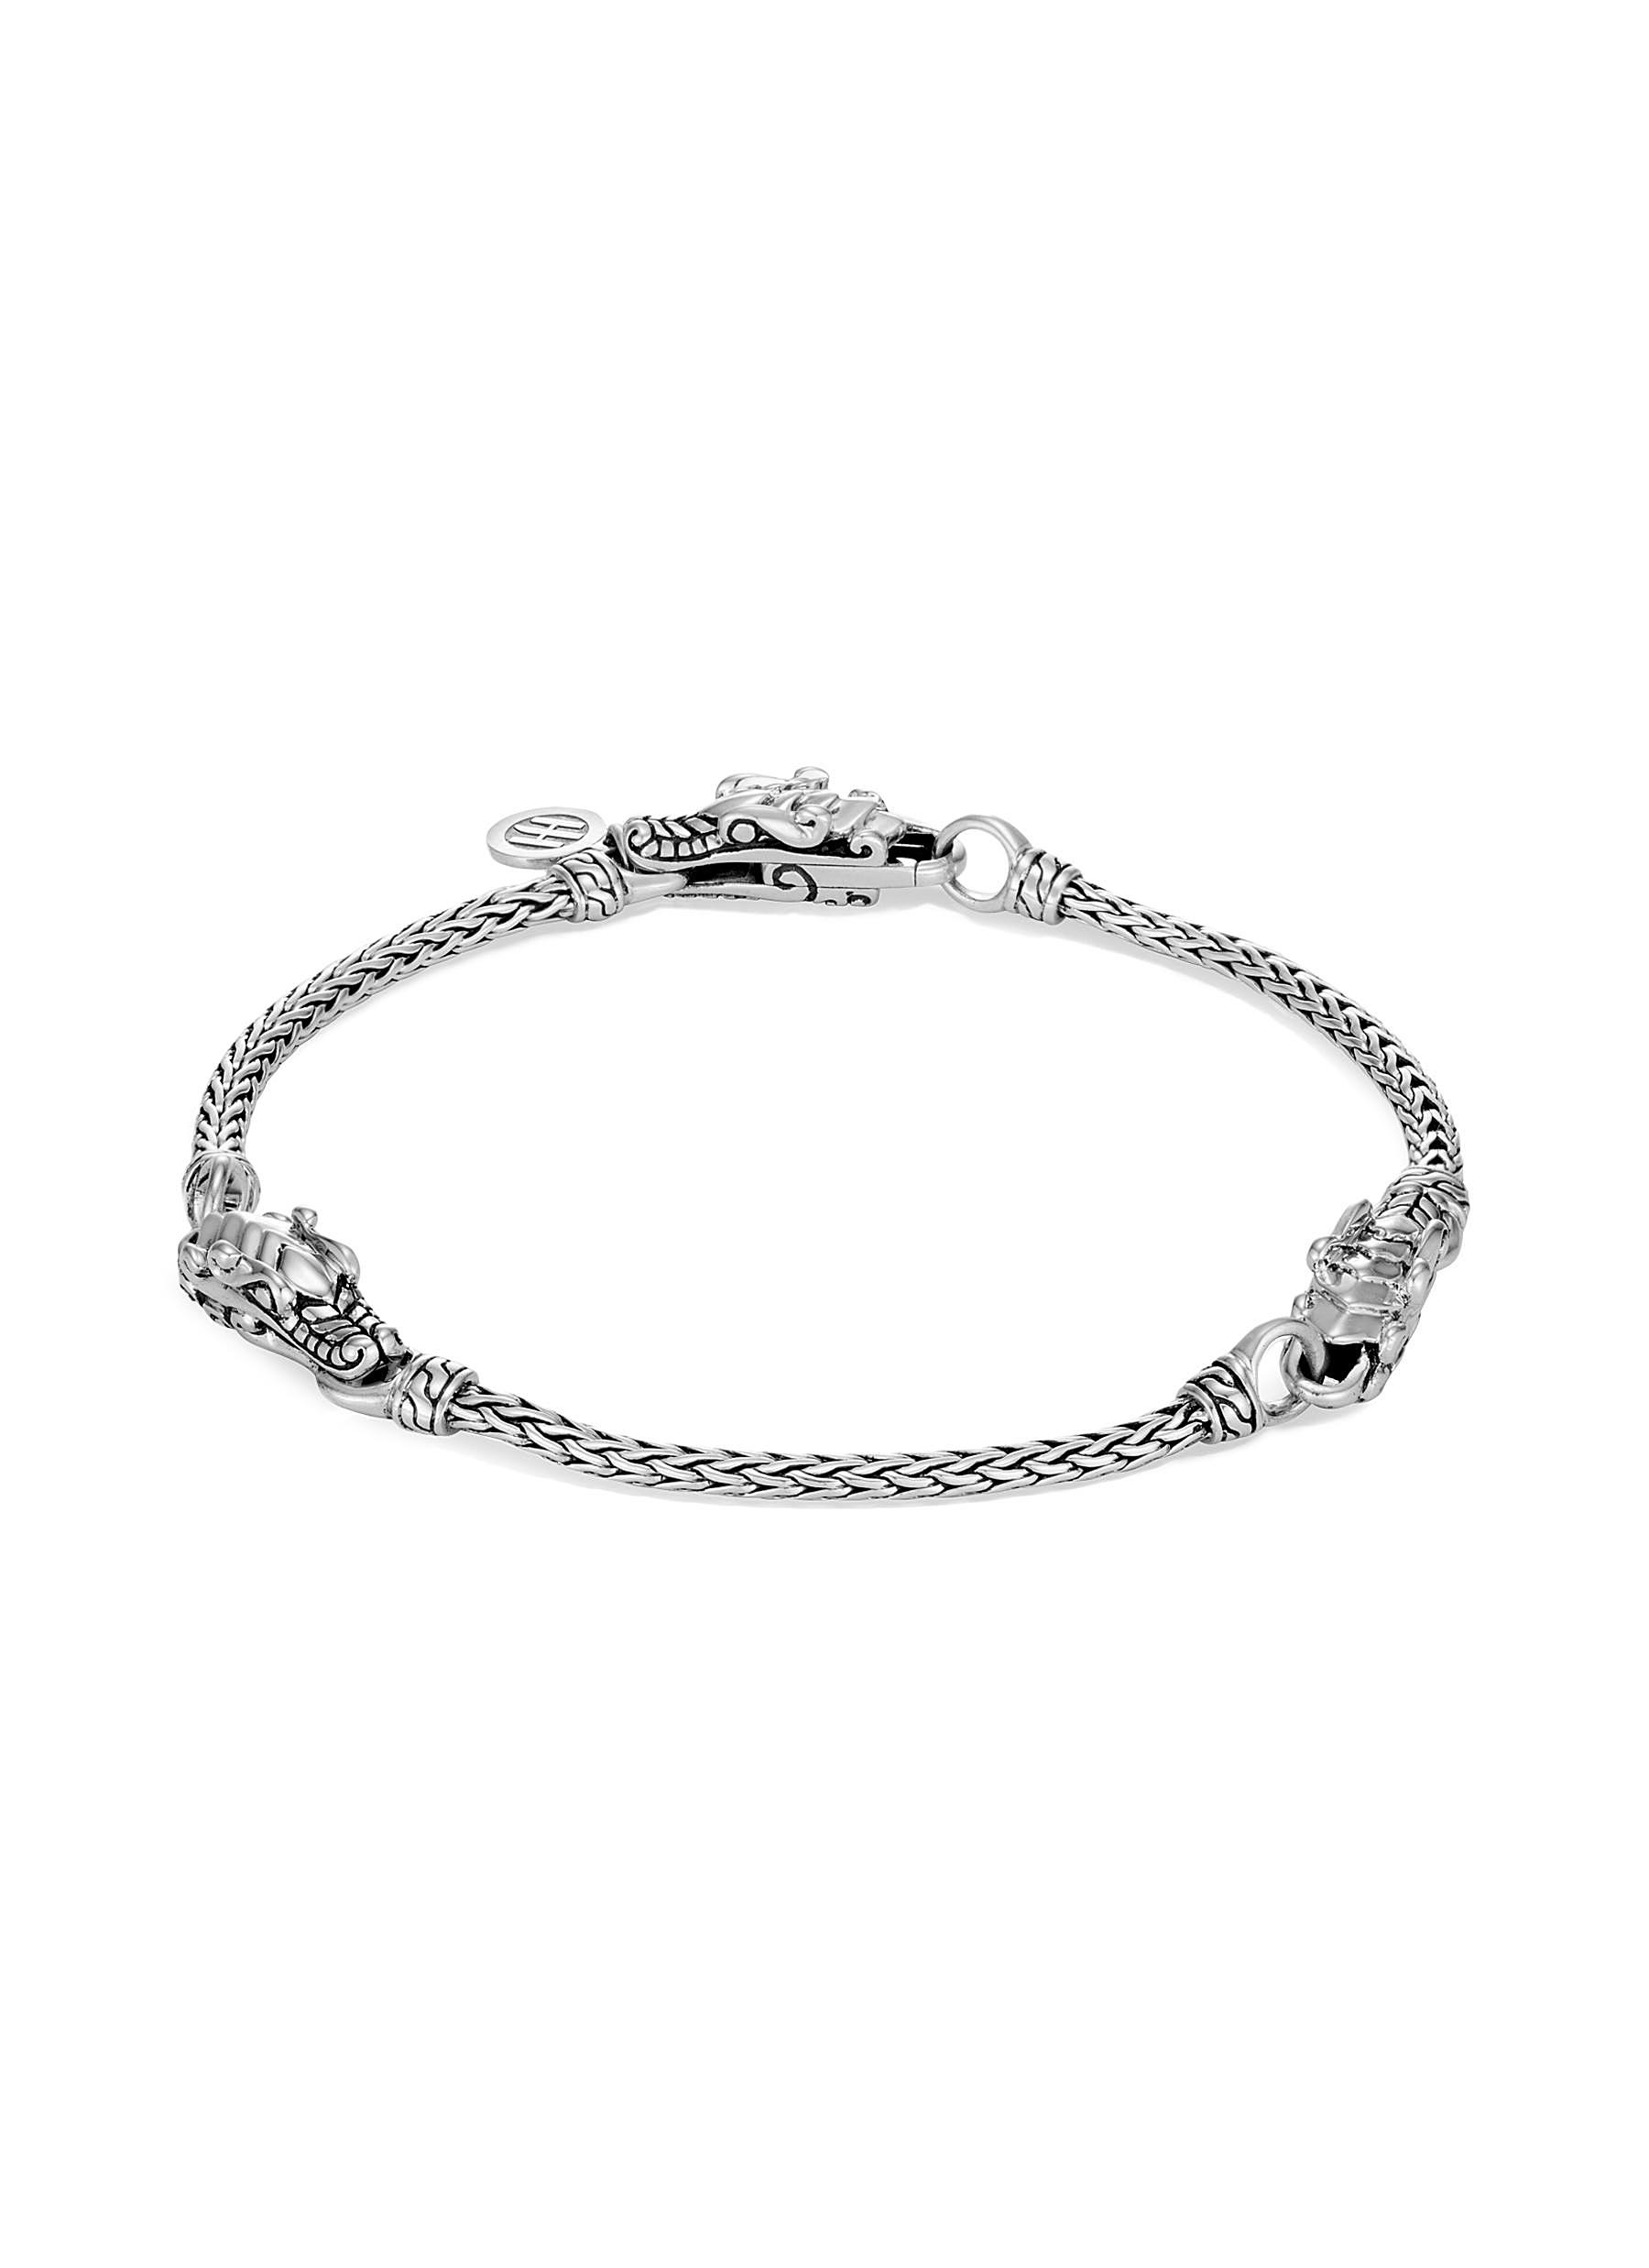 Legends Naga' silver station chain bracelet